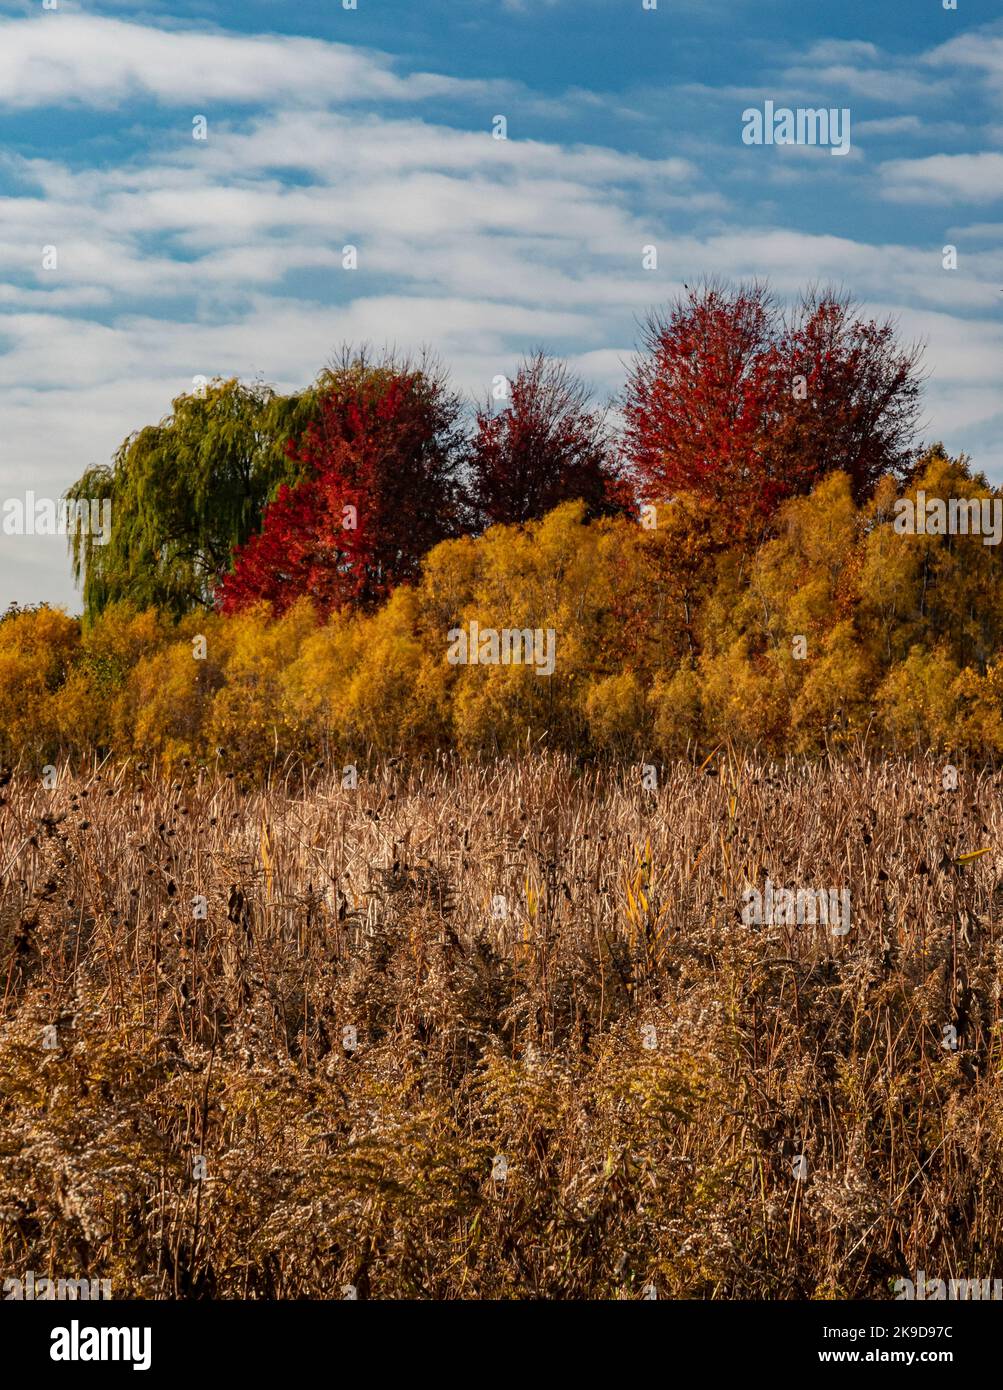 Wolken, blauer Himmel, Herbstbäume, Weiden, Schilf und Goldrute schaffen Farbbänder und Strukturen, Rock Run Greenway Forest Preserve, will County, IL Stockfoto